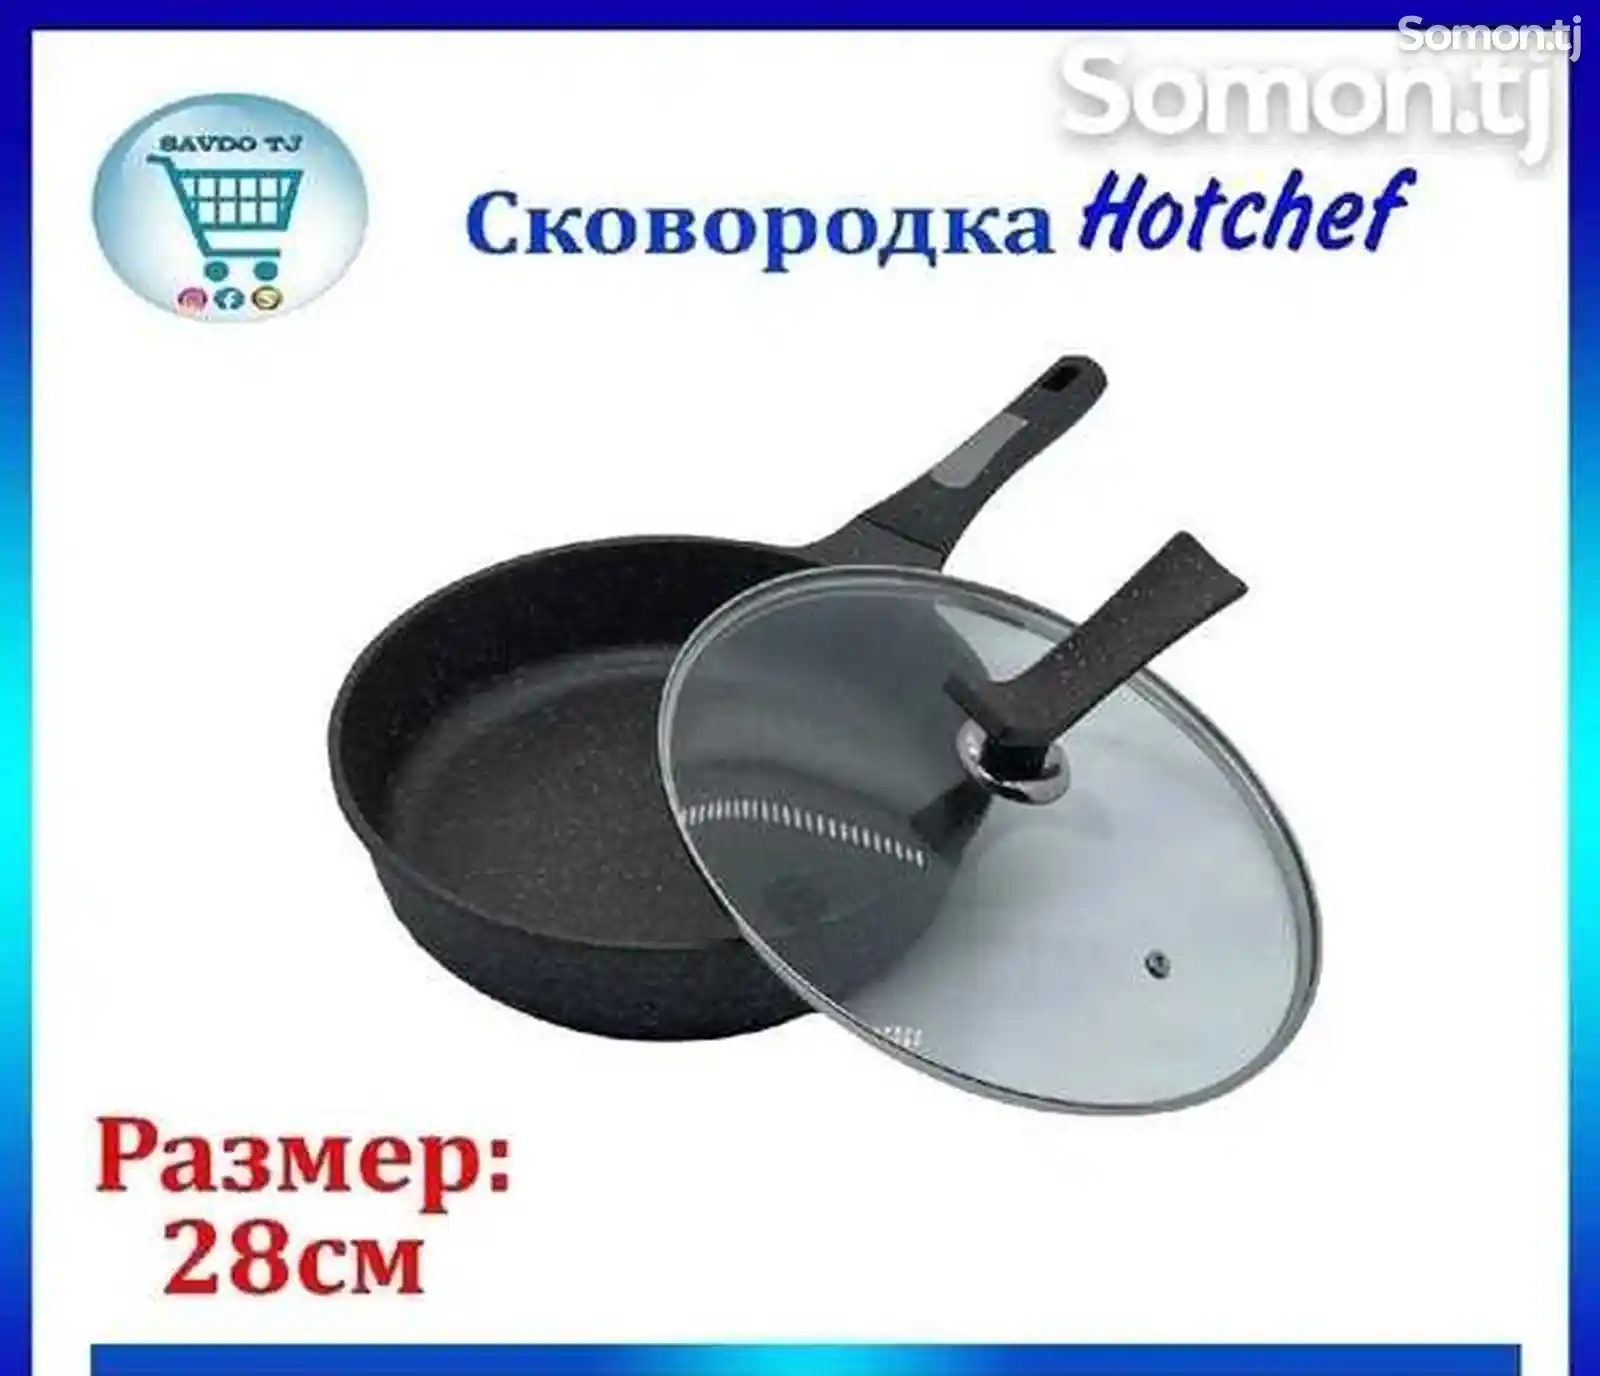 Сковородка Hotchef-5